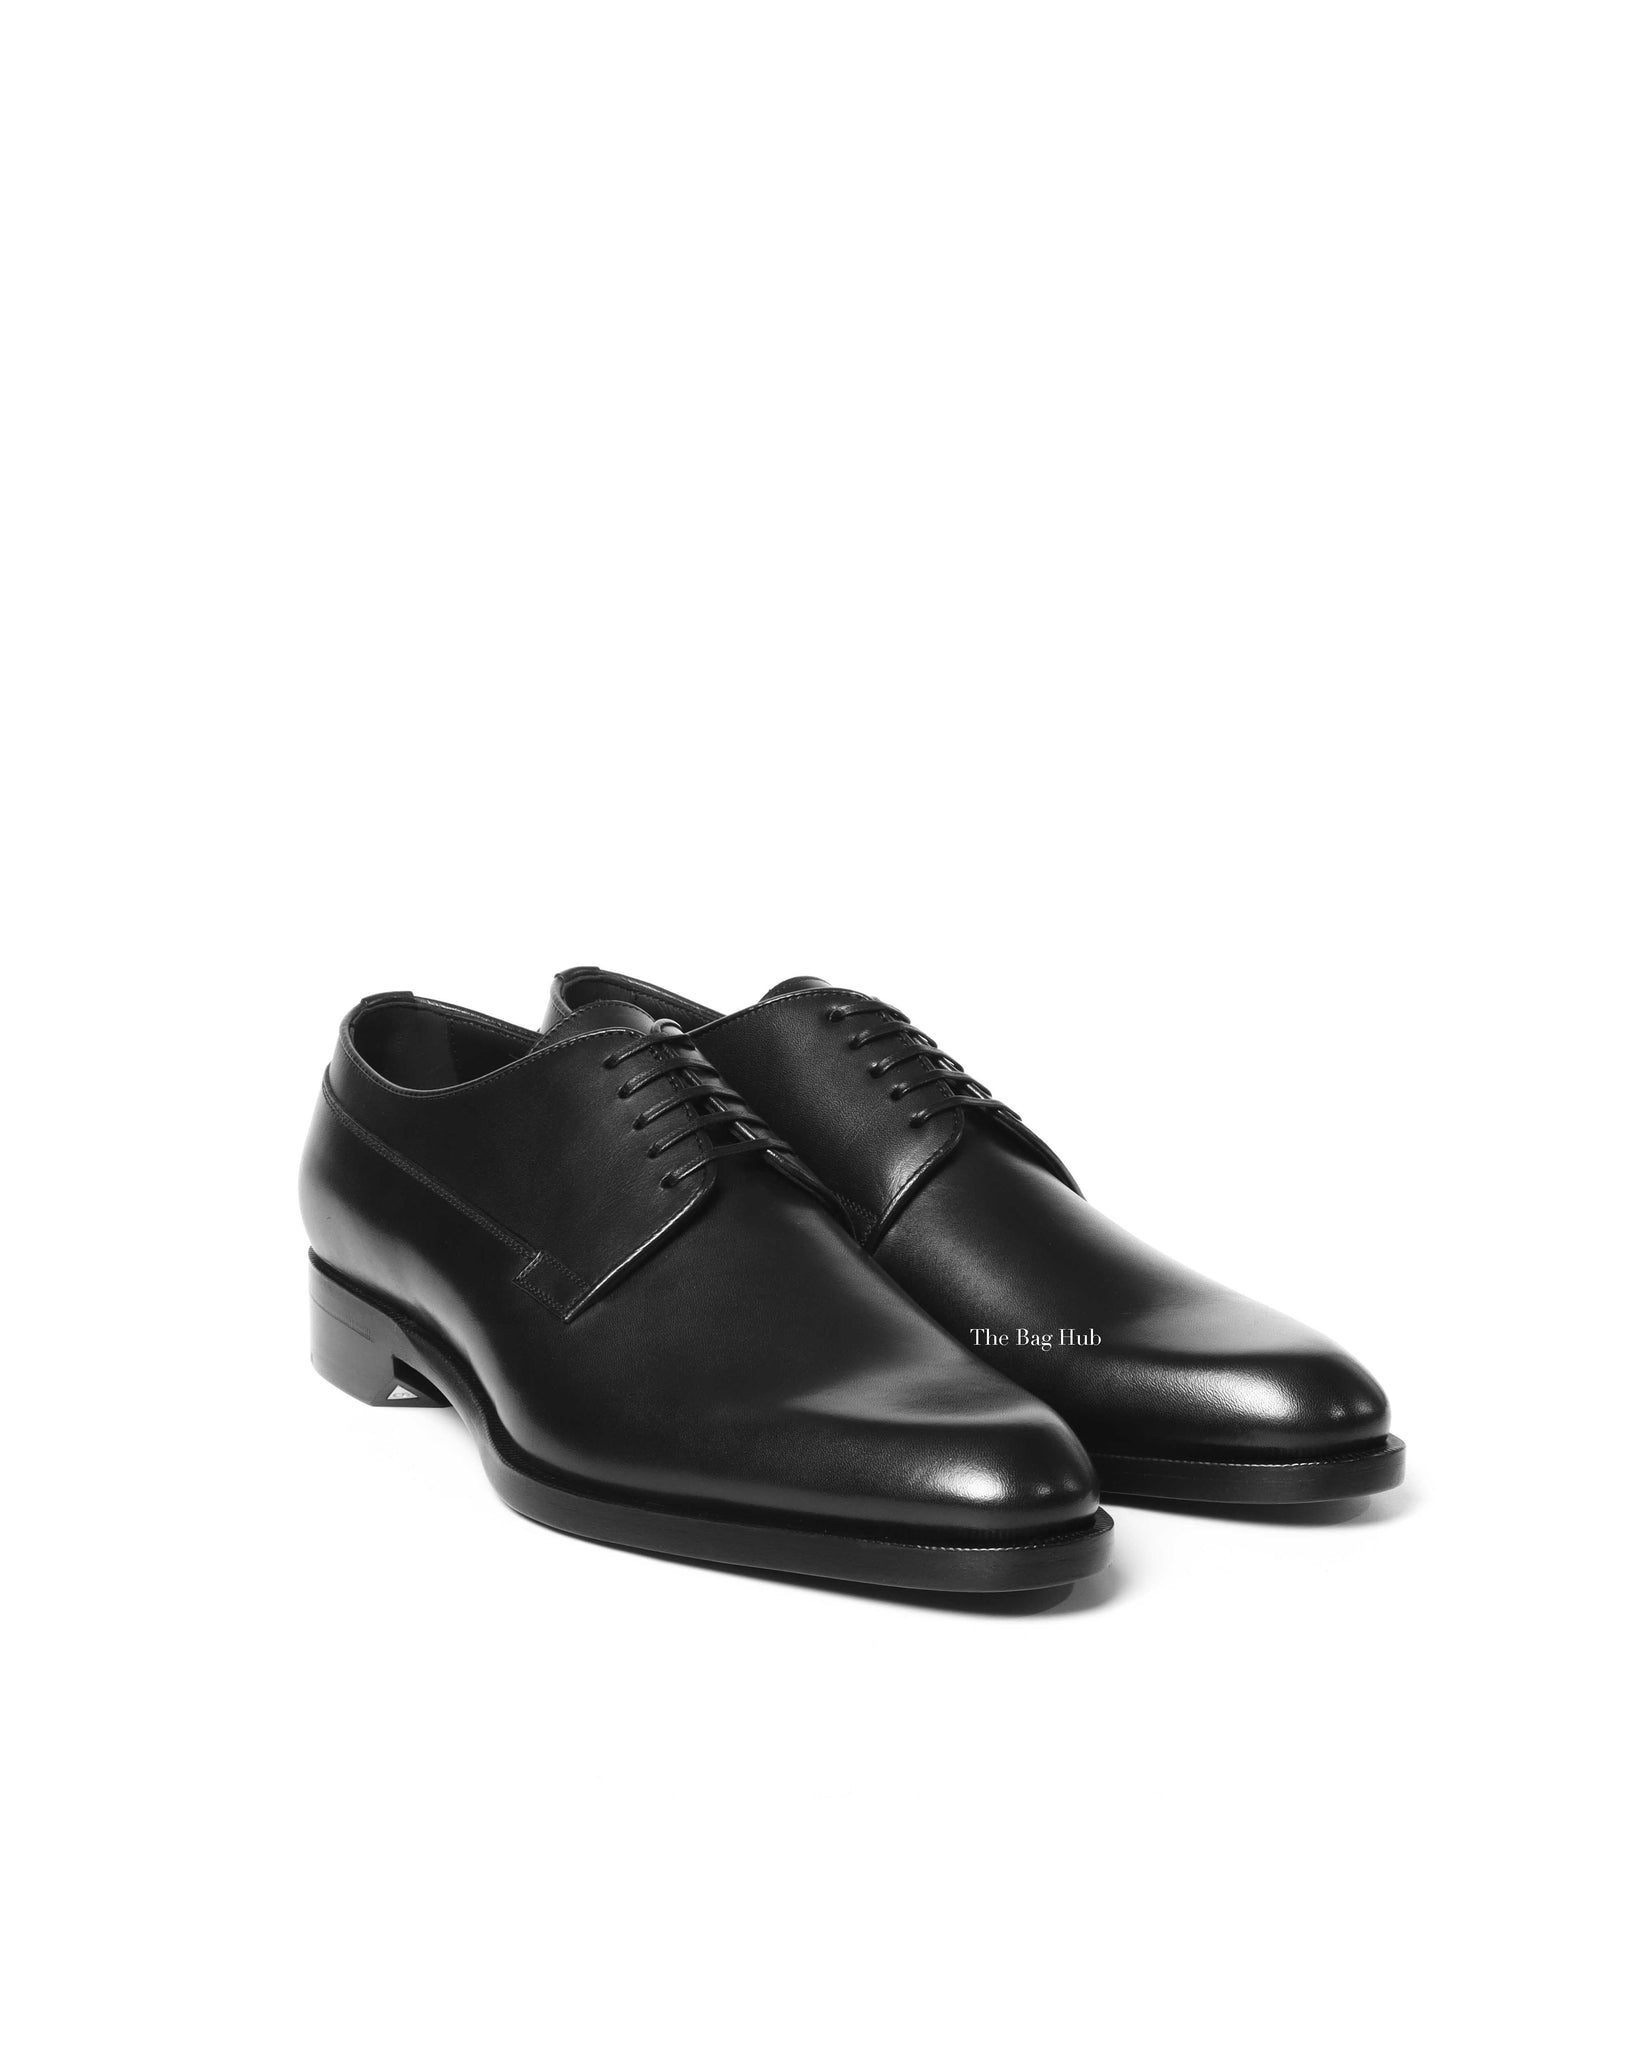 Dior Noir Leather Derby Lace Up Men's Shoes Size 40 - 2